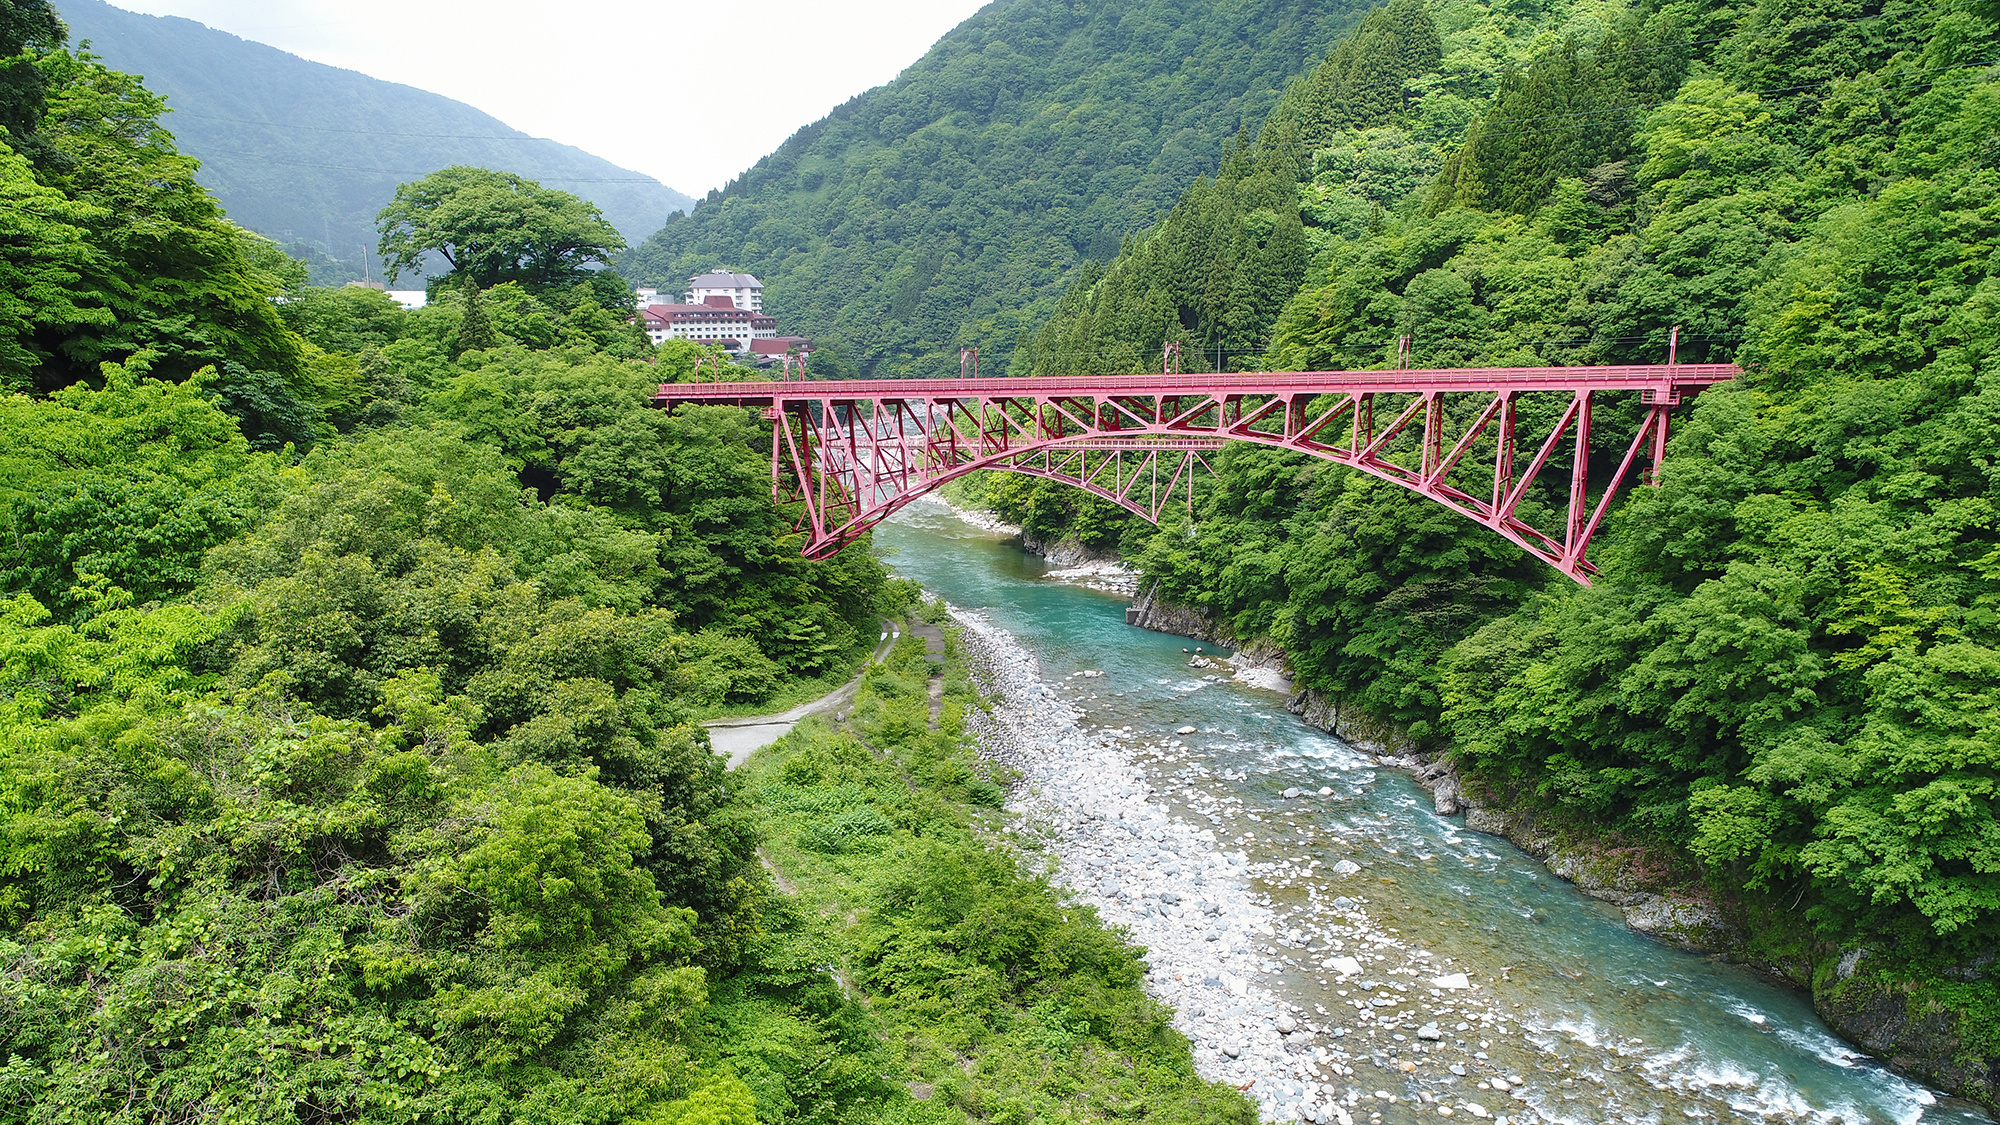 *【景観】当館から山彦橋がご覧いただけます。季節によって顔を変える山々は絶景です。